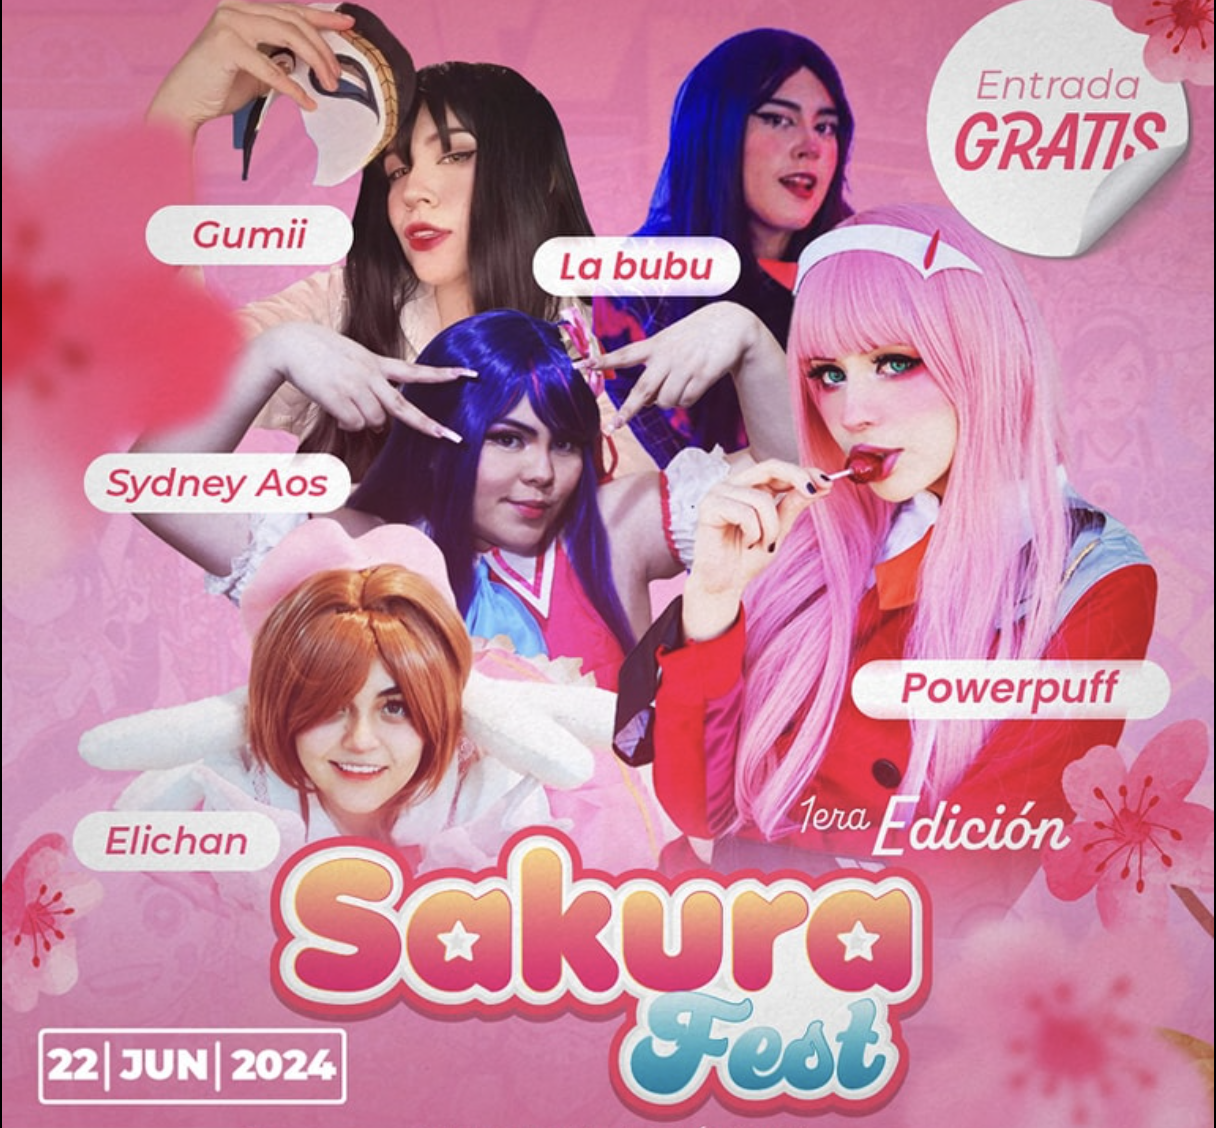 Sakura Fest: La Celebración de la Cultura Asiática Llega a Ciudad Obregón